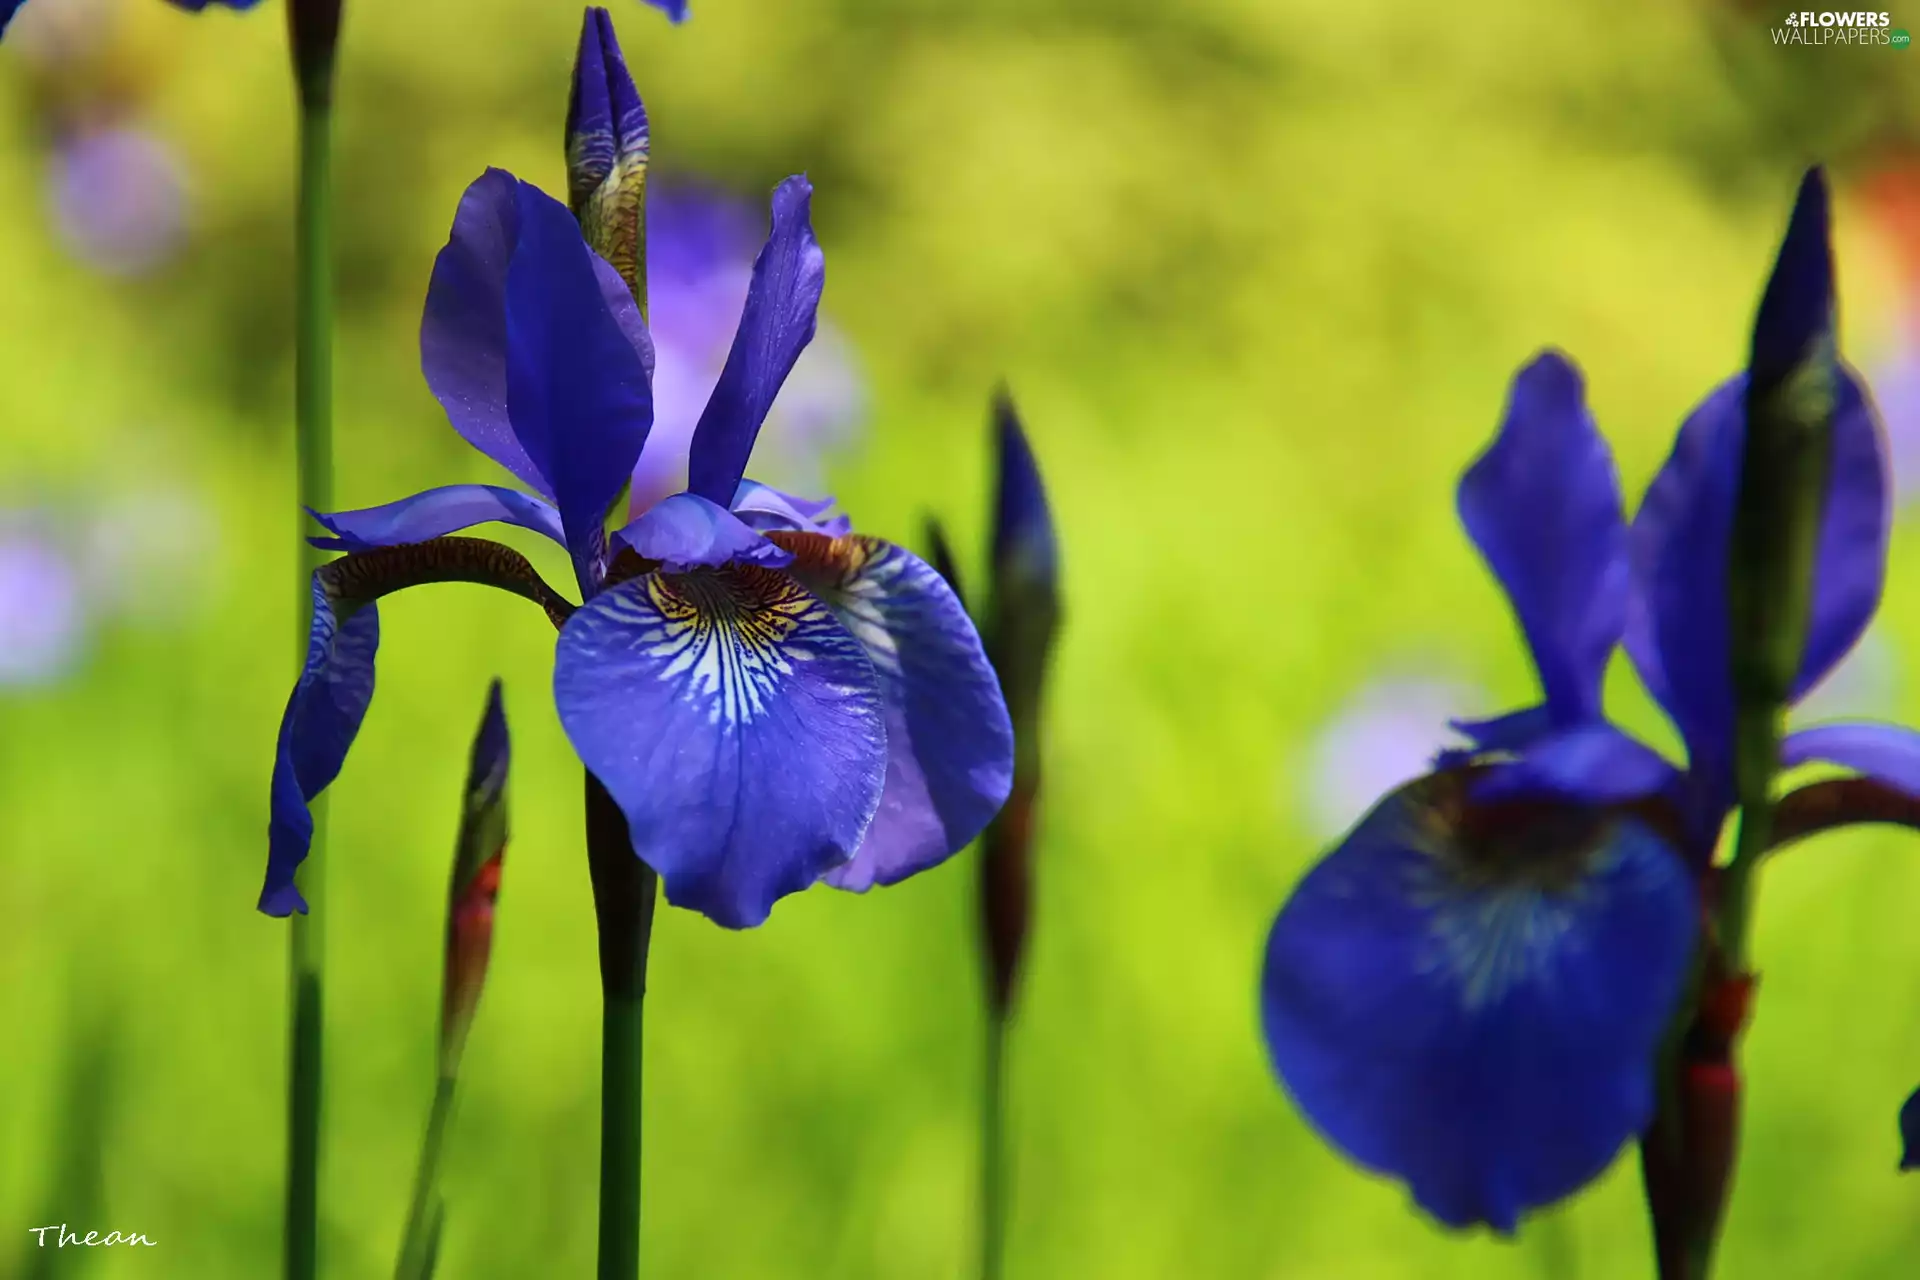 iris, Siberian Iris